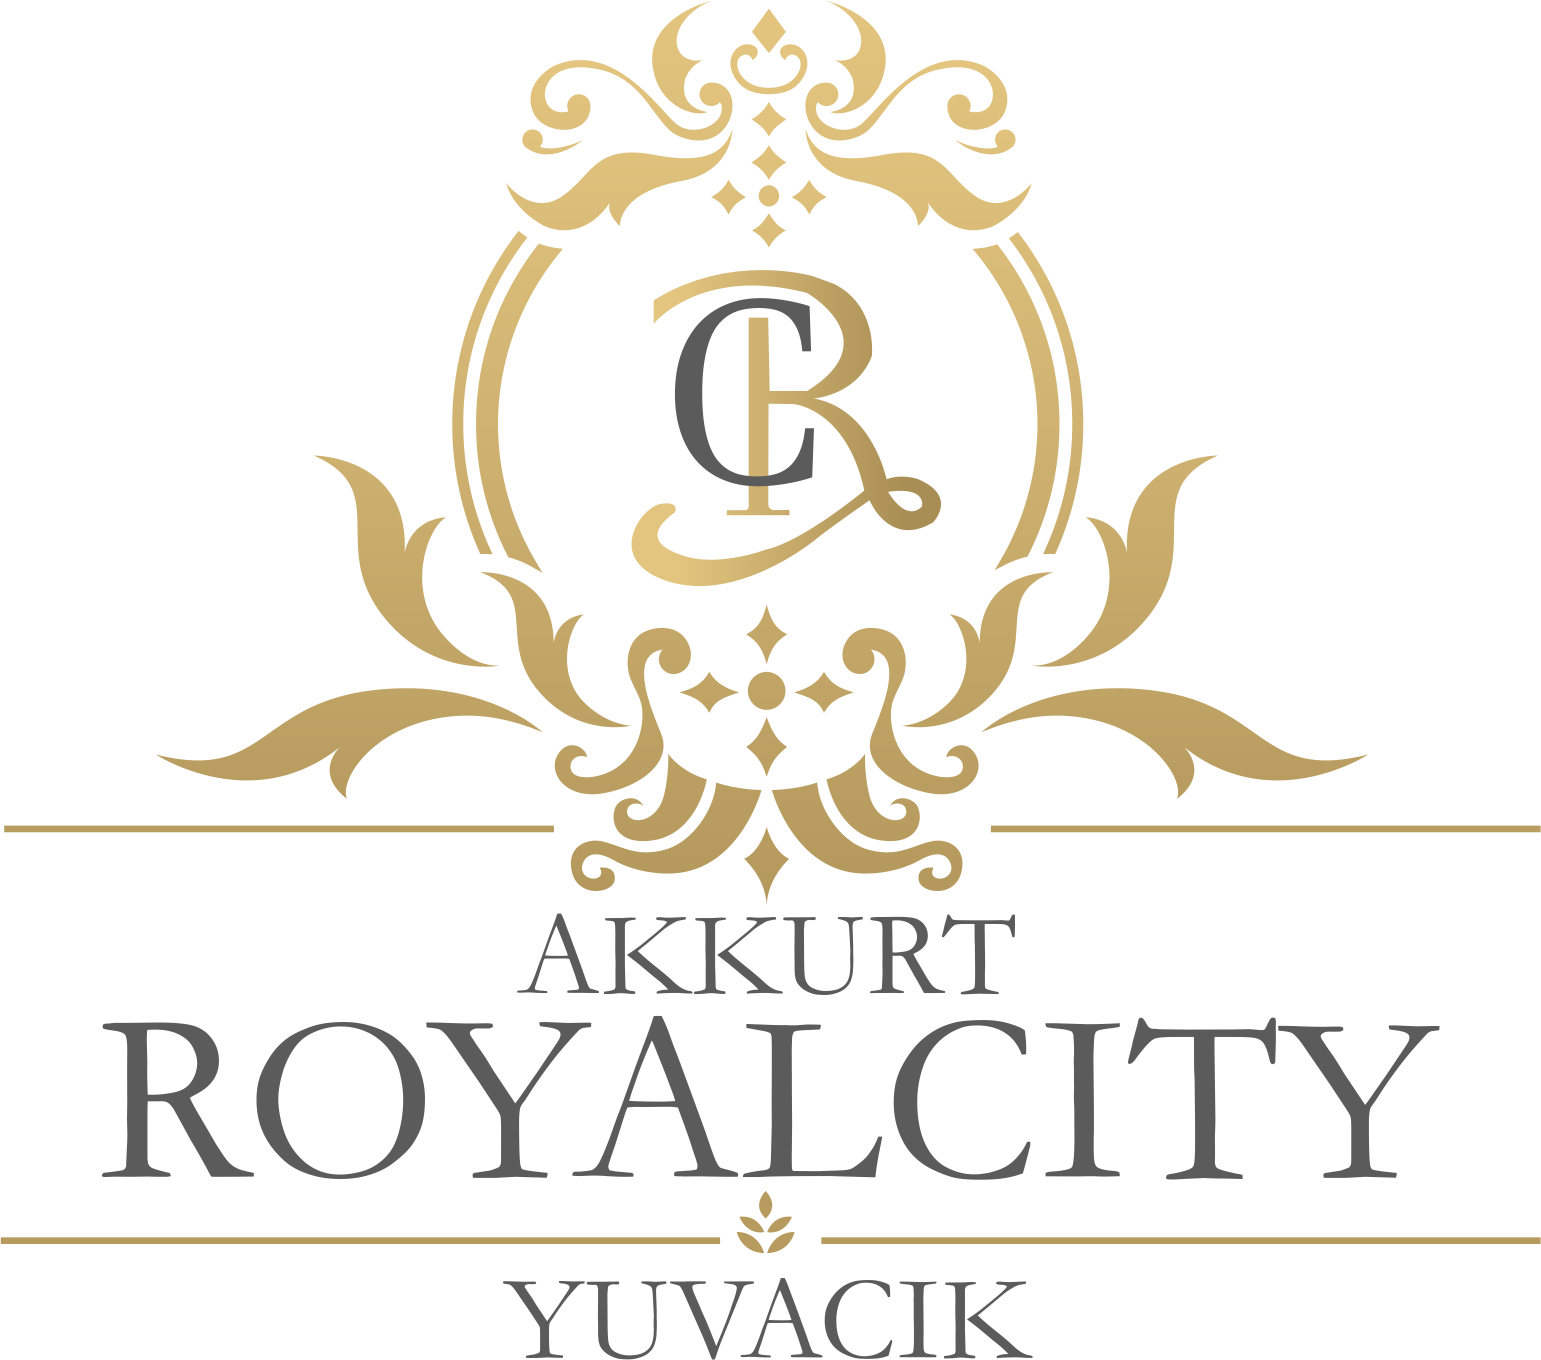 Akkurt Royal City Yuvacık